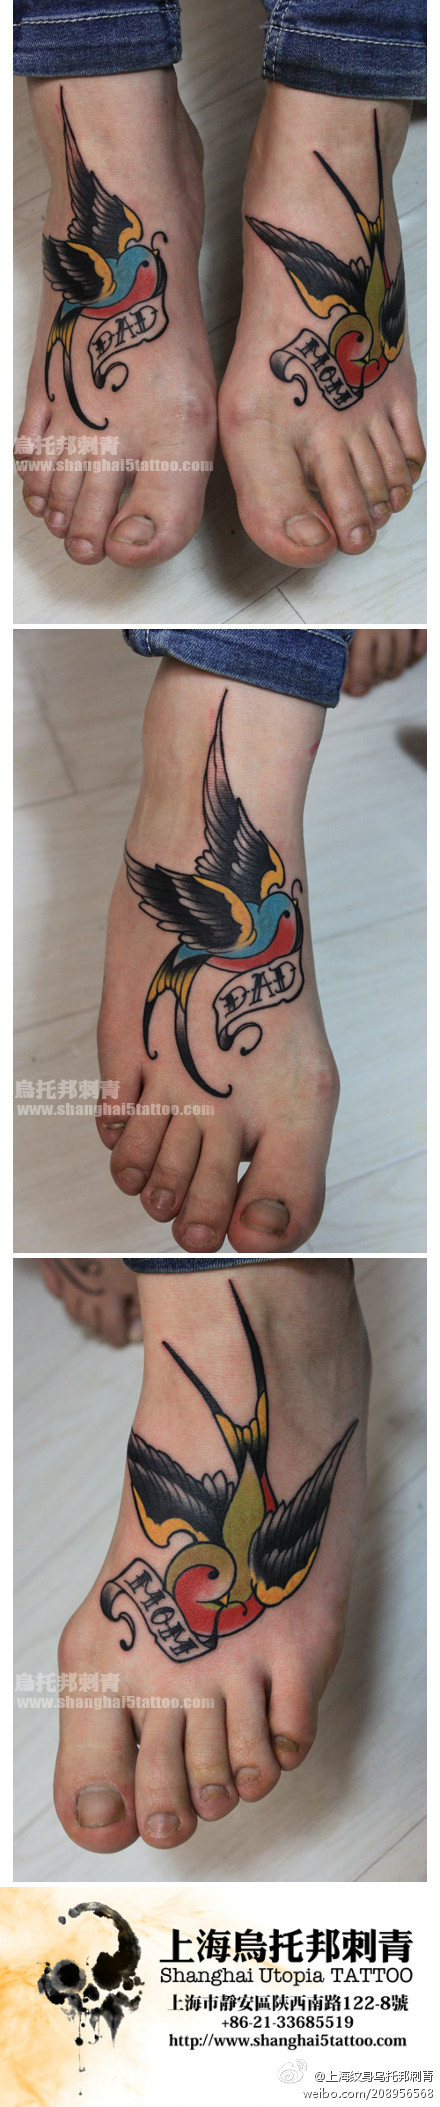 女生脚背潮流时尚的燕子纹身图案